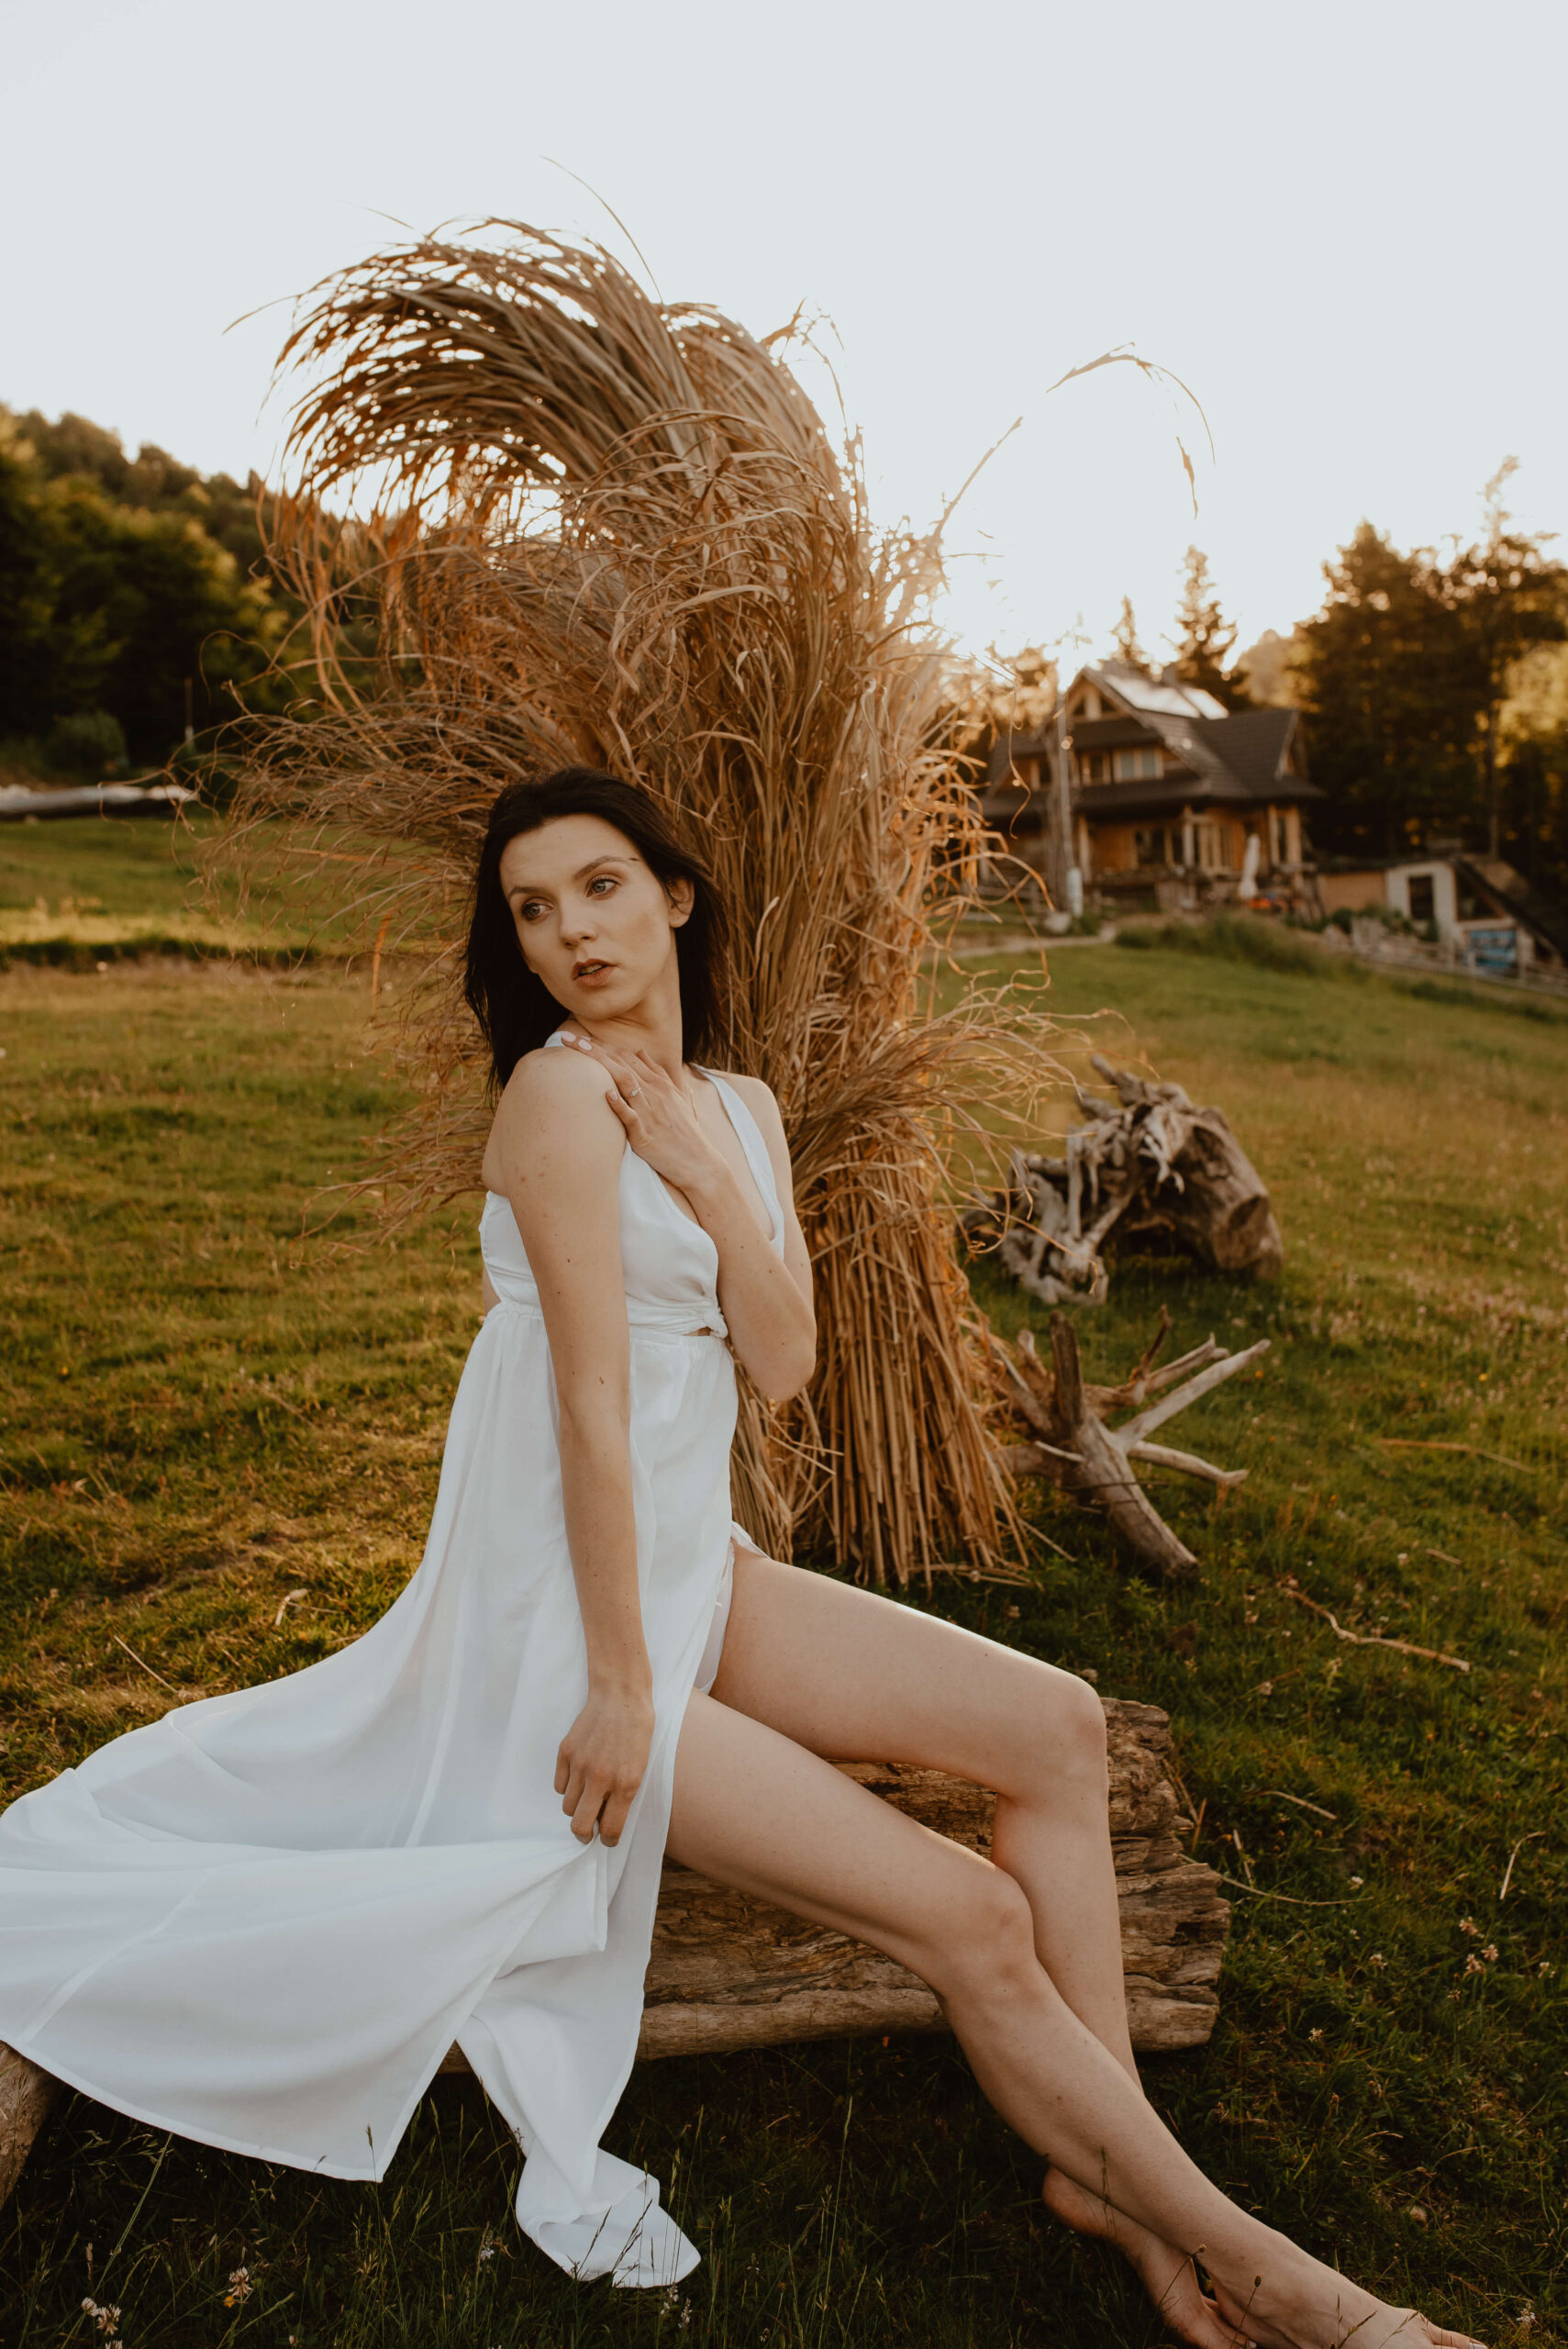 Ein neuer Tag beginnt! Eine junge Braut steht auf einem Baumstamm und bewundert den Sonnenaufgang. Sie trägt ein weißes, leichtes Kleid und ihre Haare fliegen im Wind. Im Hintergrund befinden sich Felder mit hohem Gras, die im warmen Sonnenlicht glänzen.